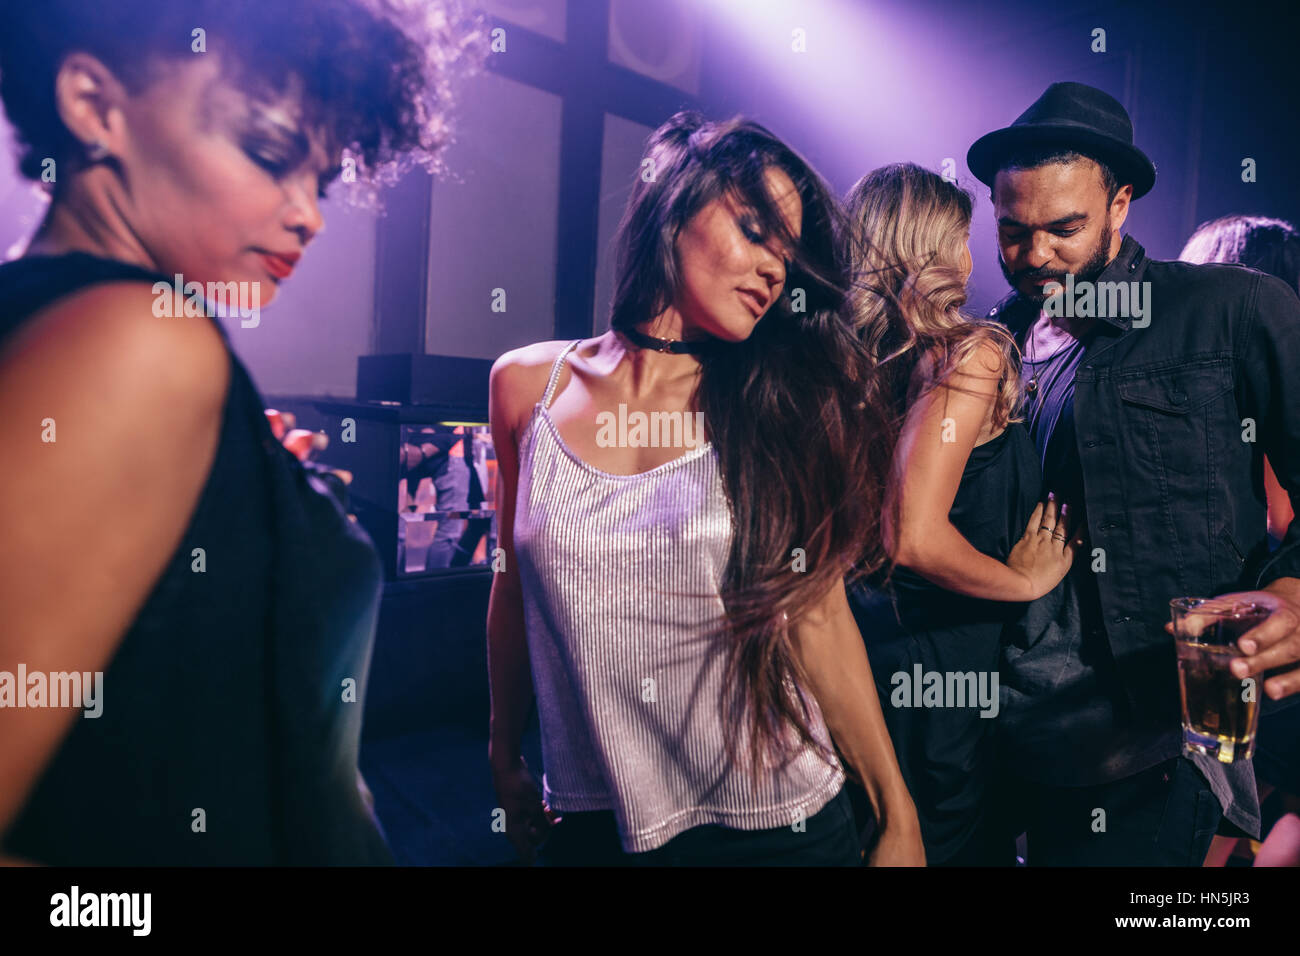 Giovane donna dancing in festa con gli amici nelle vicinanze. Un gruppo di giovani divertendosi al night club. Foto Stock